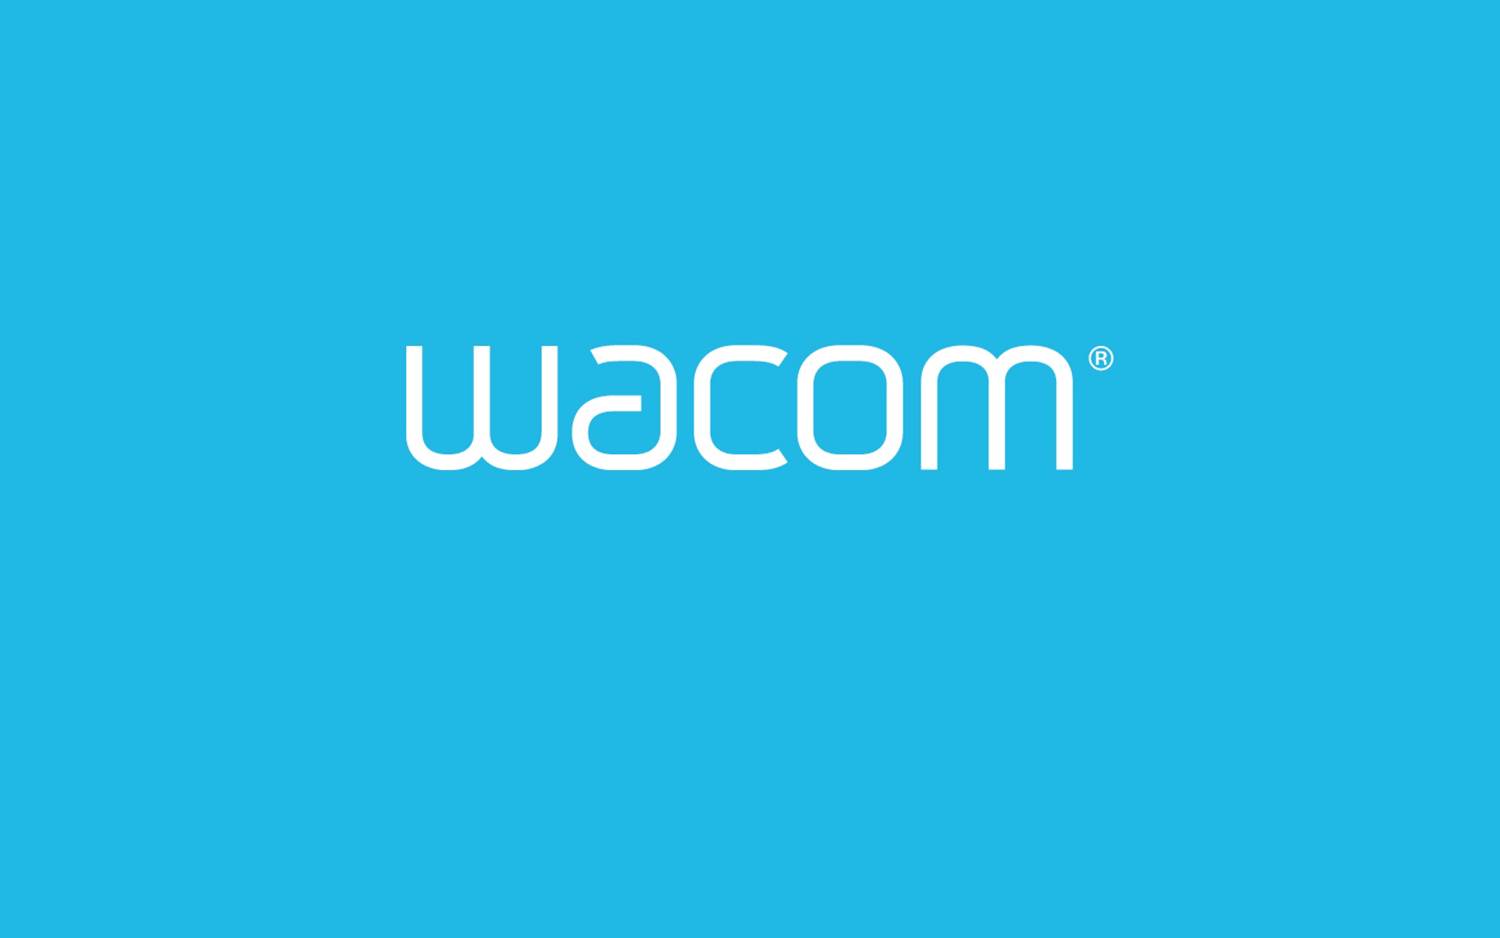 Hardware completo de Wacom para Colombia - Compra con Grupo Deco las licencias para hardware profesional en diseño y edición de elementos gráficos de Wacom- Colombia